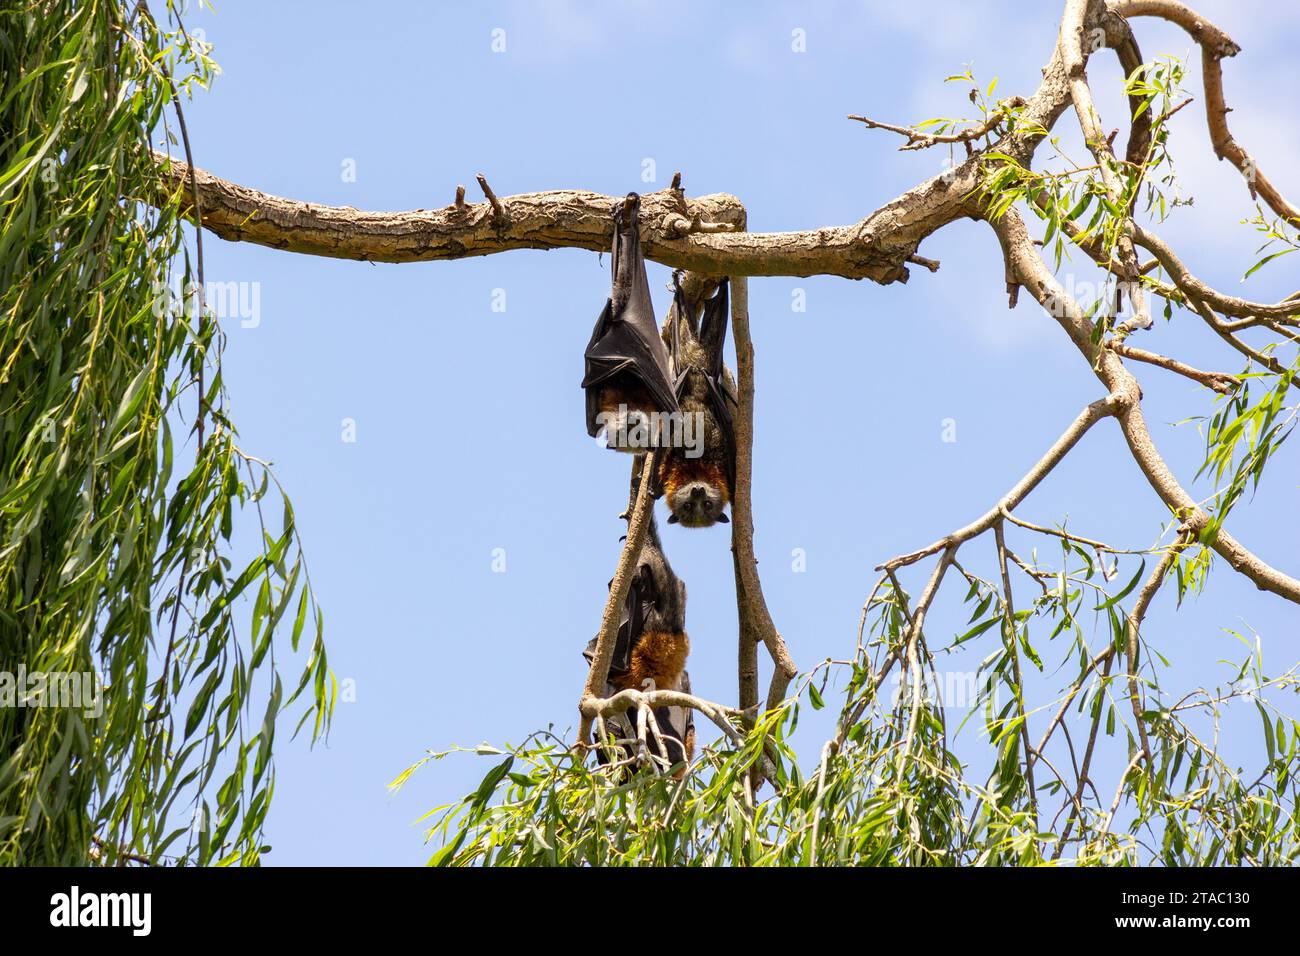 Pipistrelli di frutta, volpi volanti, pteropus appeso agli alberi Foto Stock